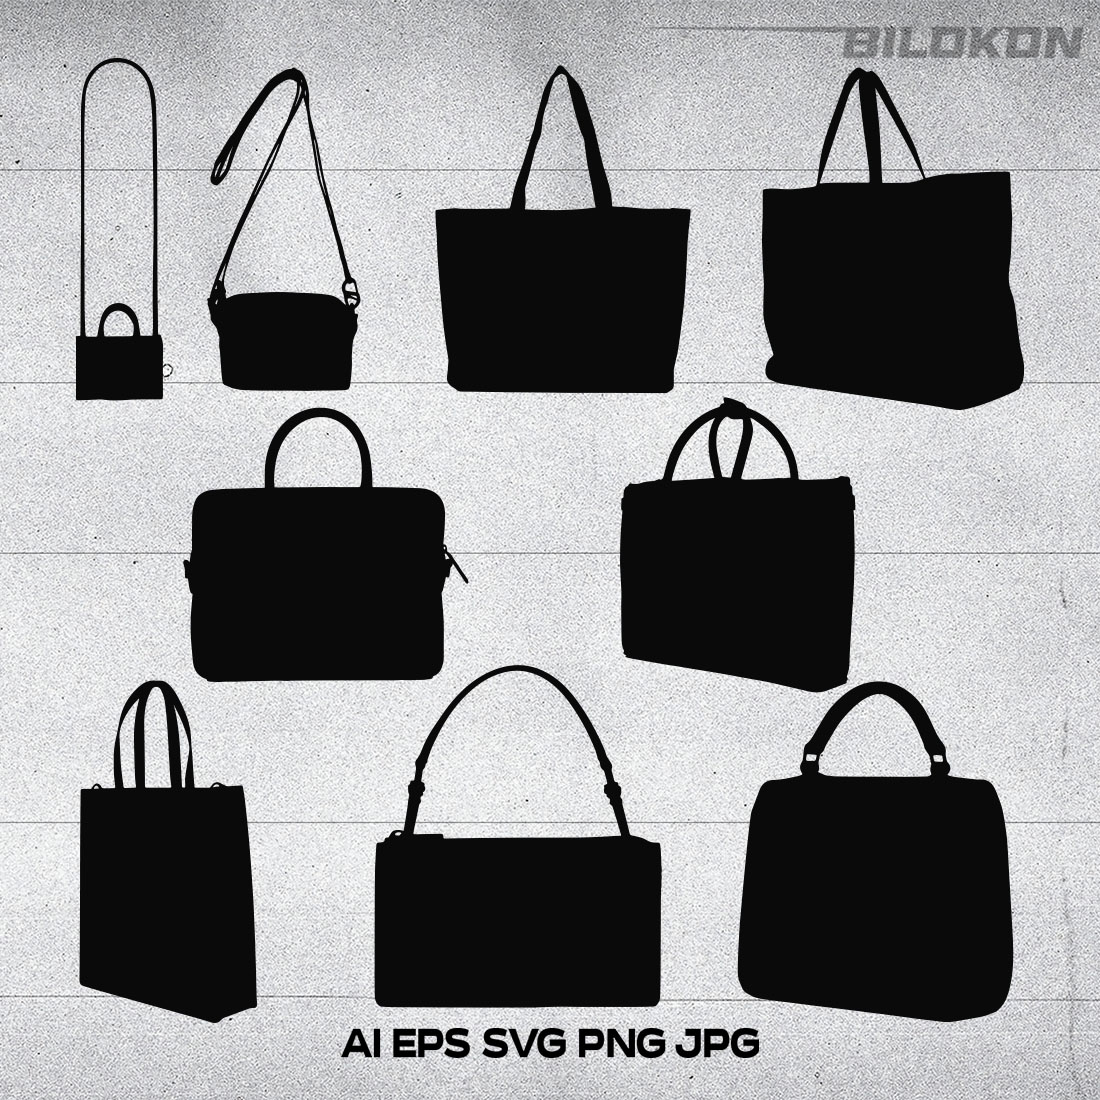 Fashion Bag Icon SVG Design cover image.